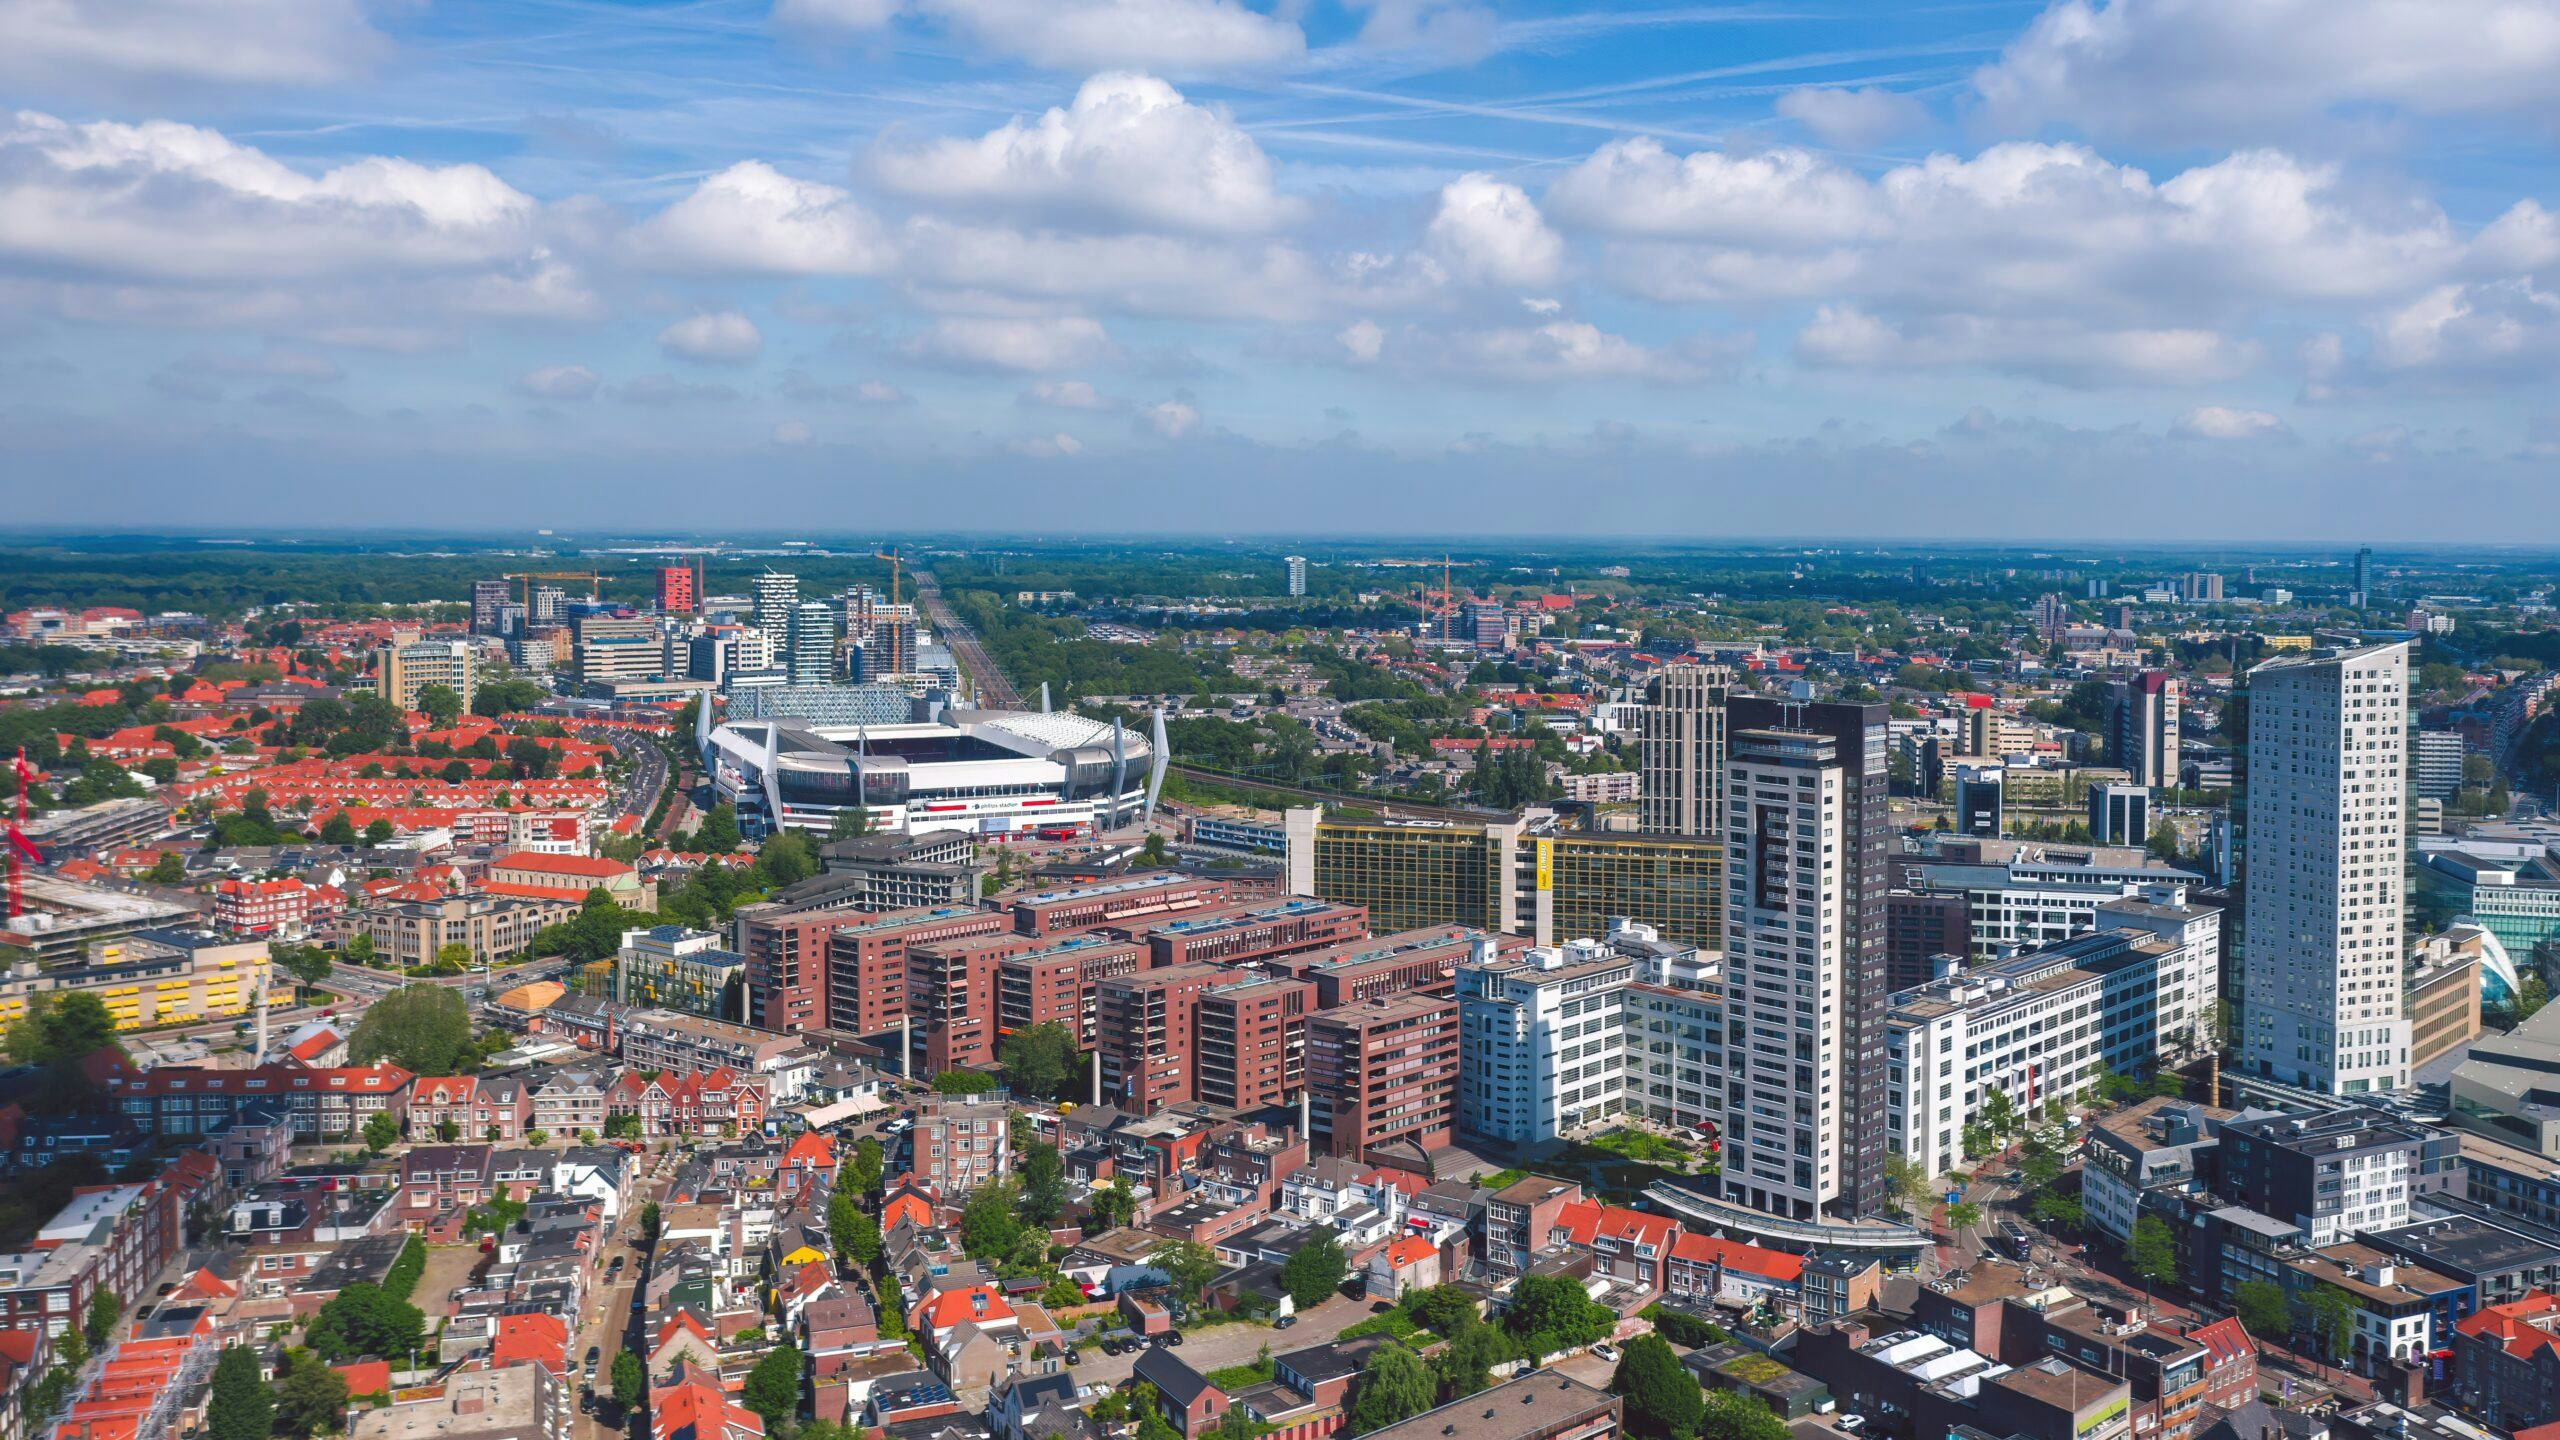 ASML betaalt tot zeker 2040 mee aan woningbouw in regio Eindhoven